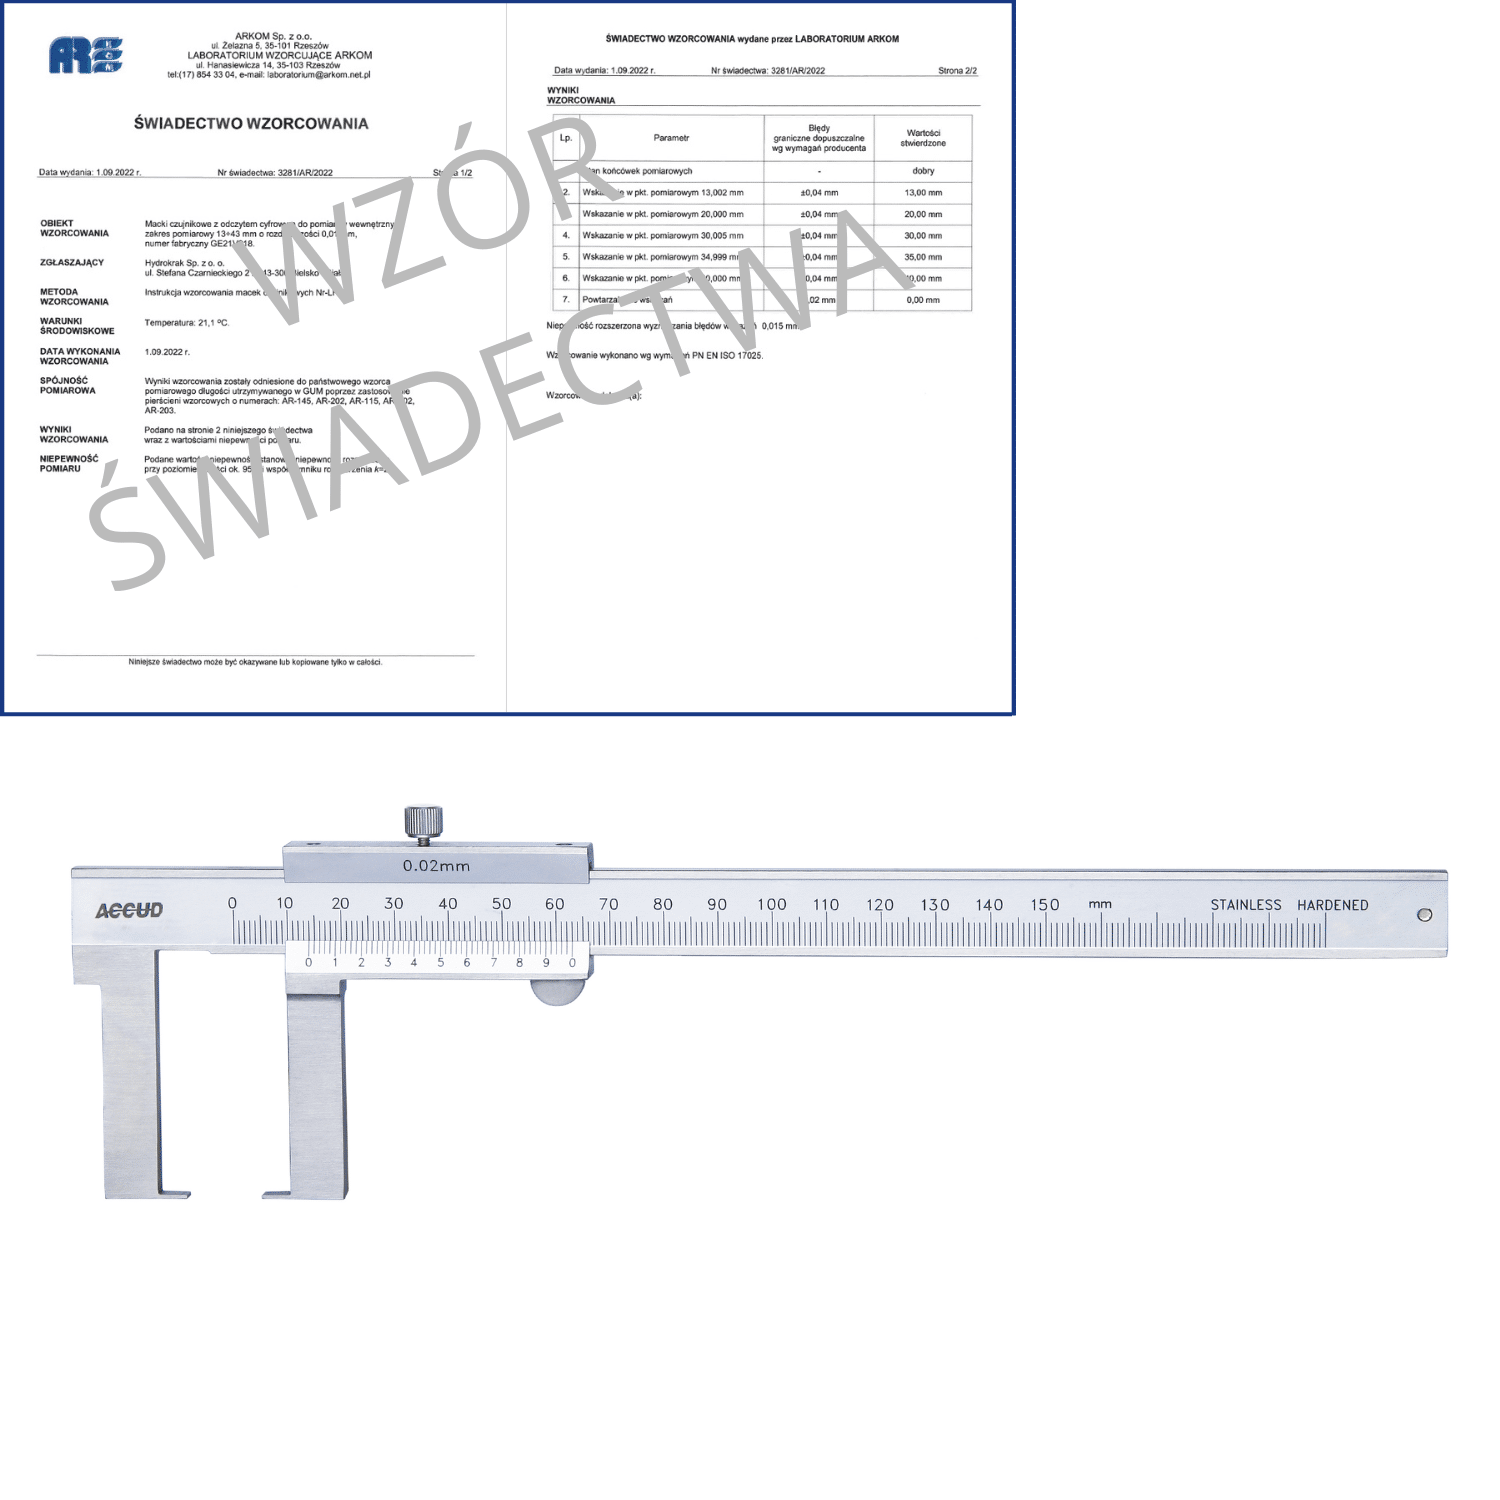 ACCUD suwmiarka analogowa 150/0.02 mm do pomiarów zewnętrznych + świadectwo wzorcowania 143-006-11 WZORC